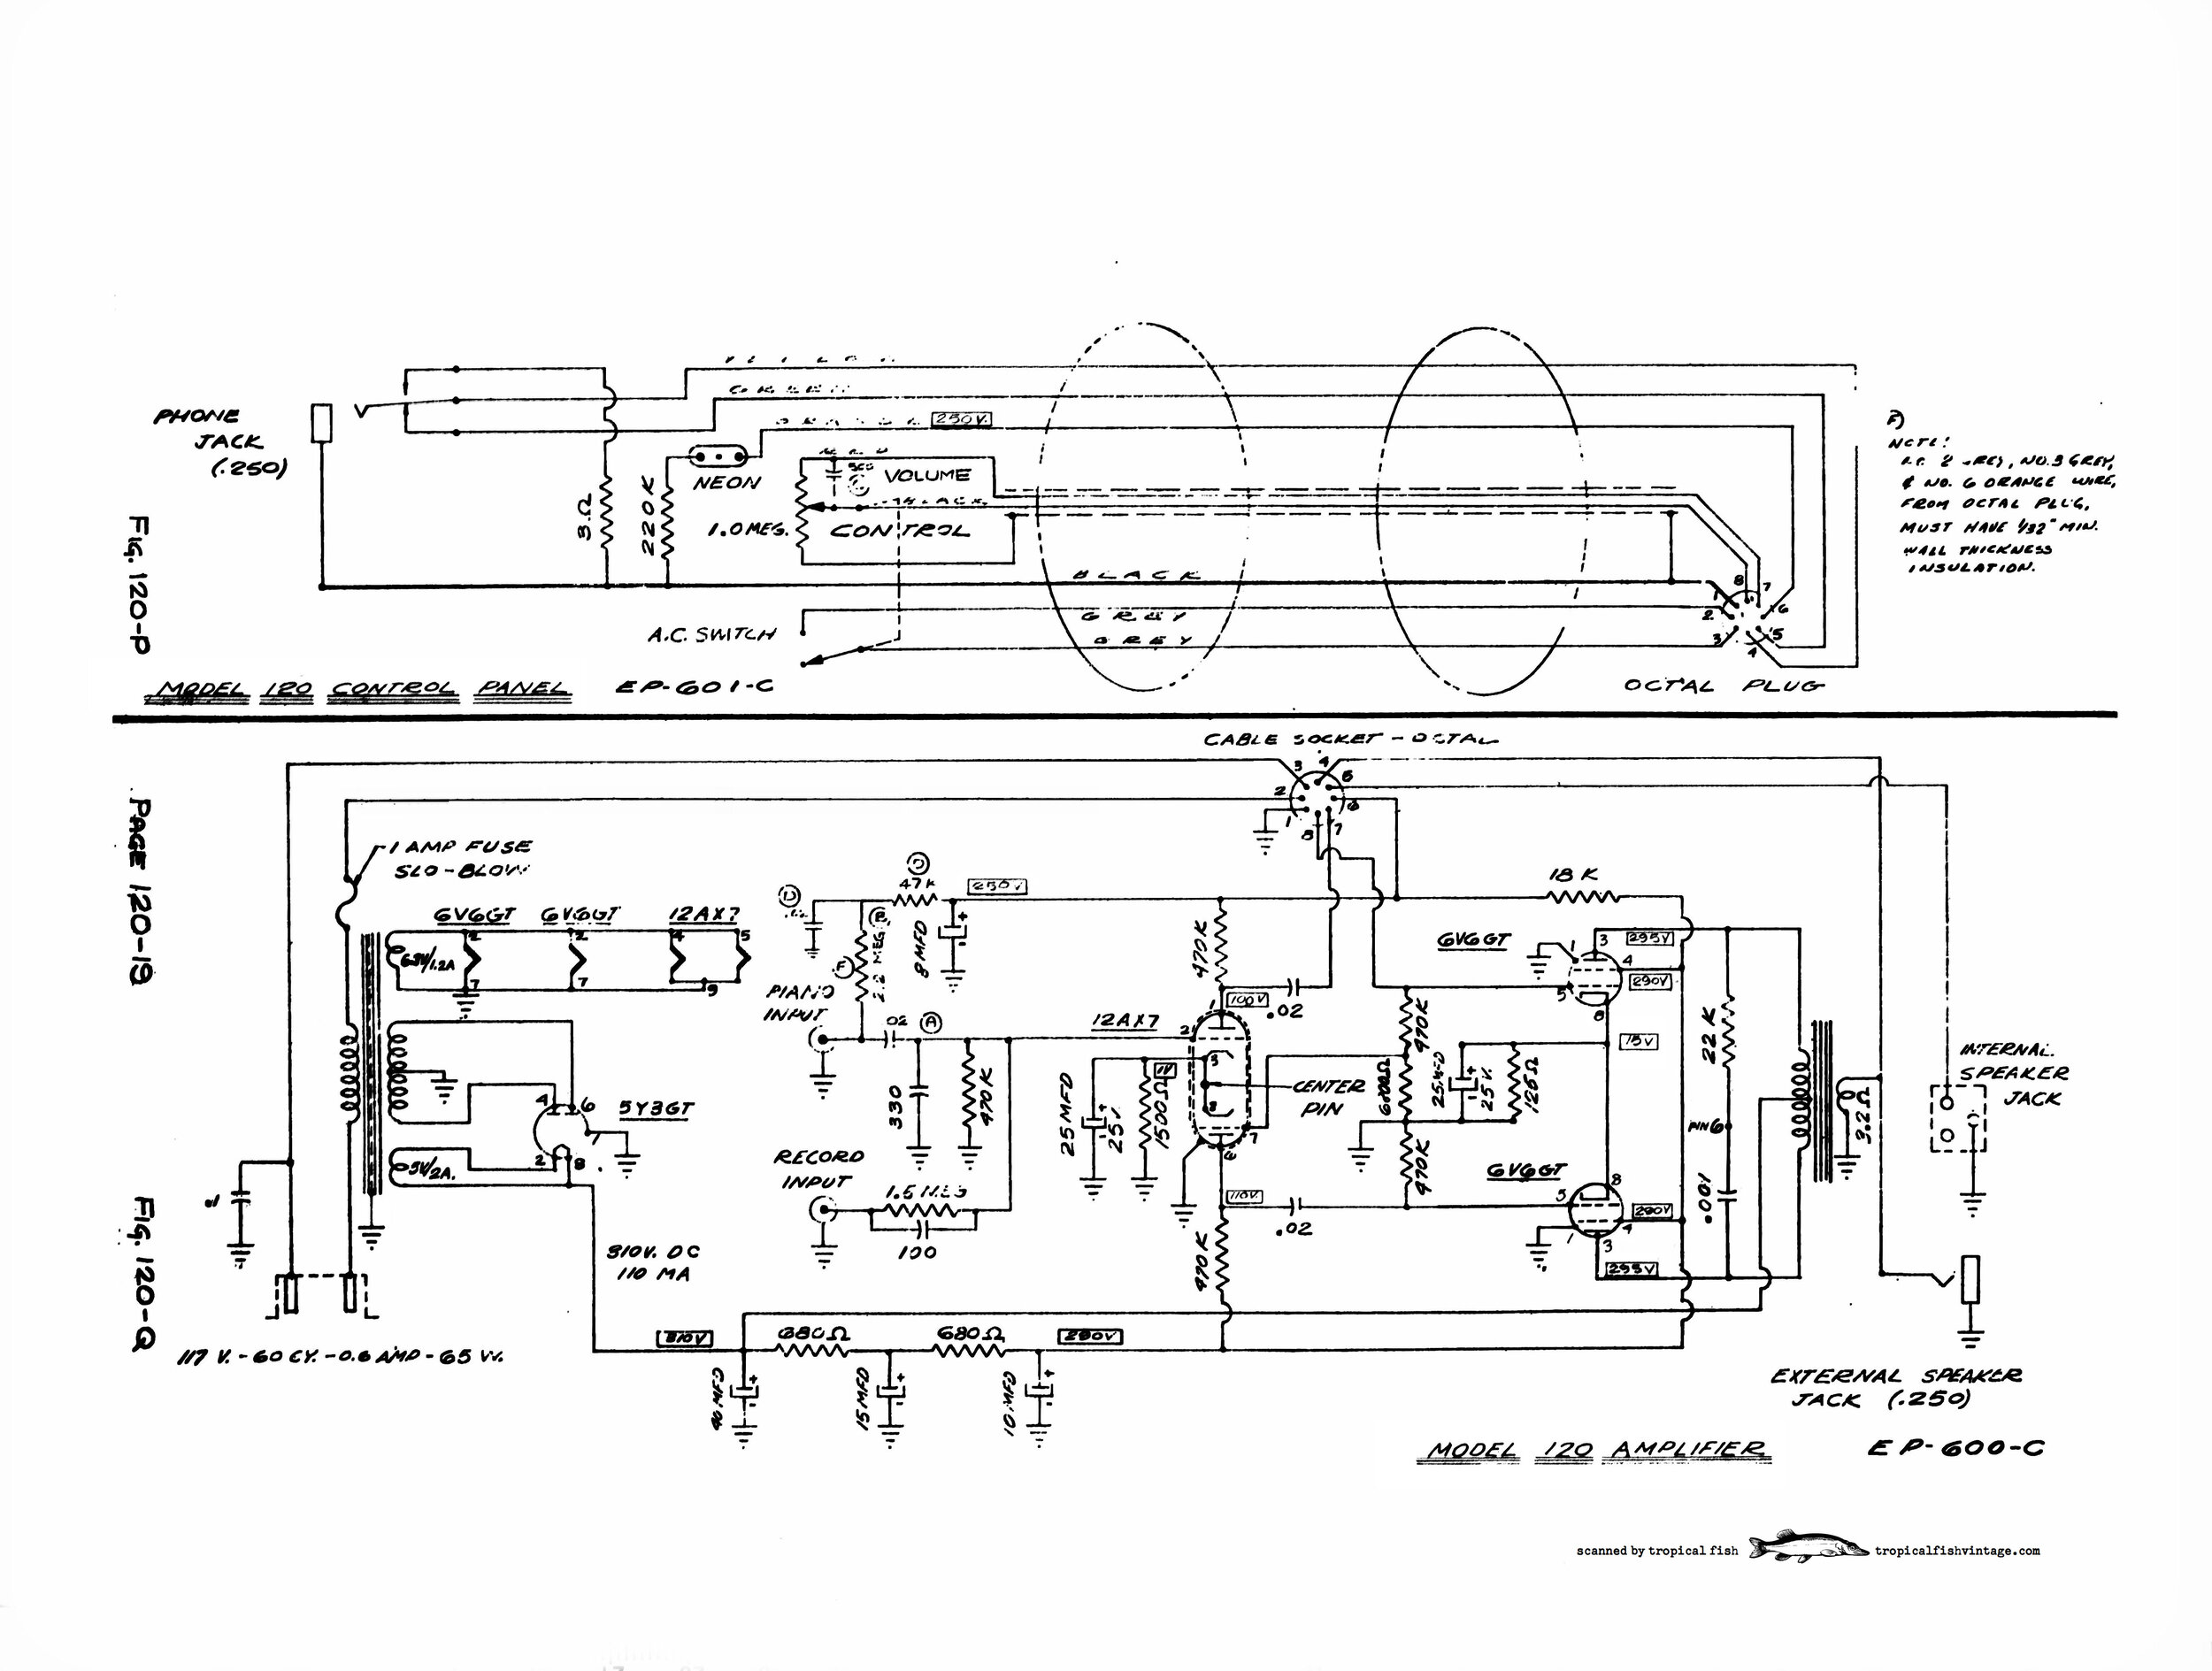 Wurlitzer 120 schematic